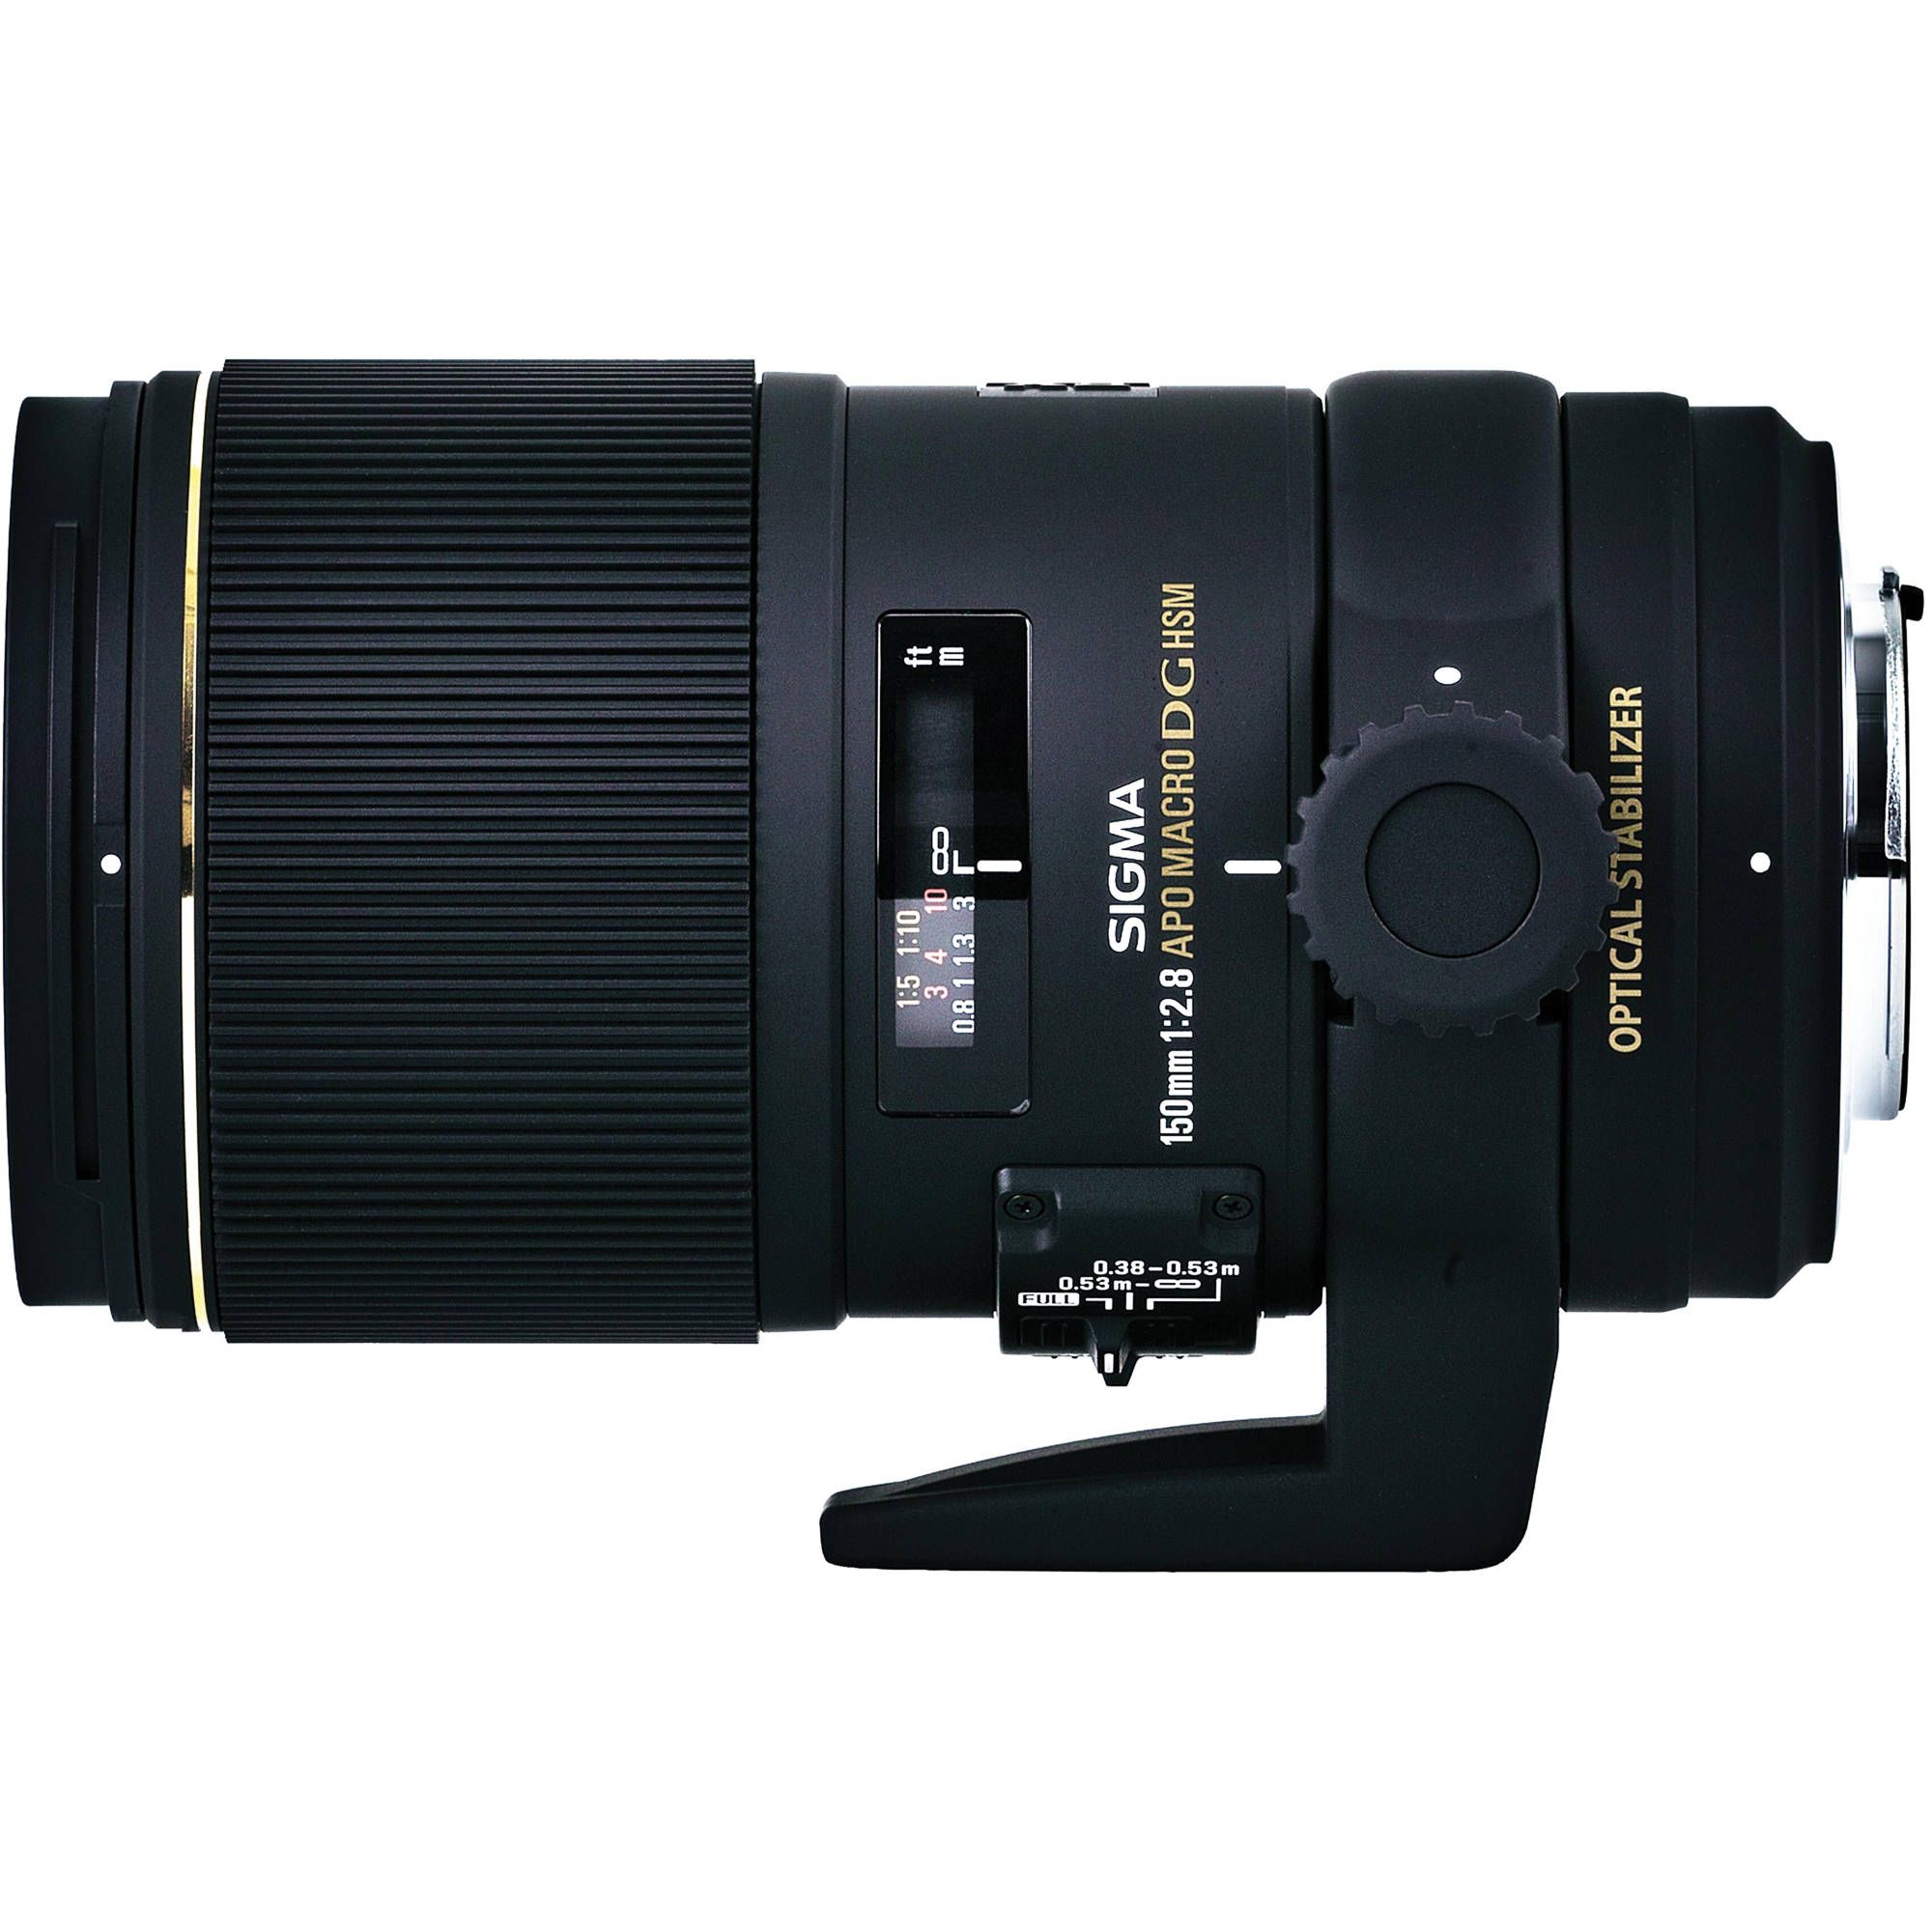 Sigma macro canon. Sigma 150 macro Nikon. Sigma 150mm f2.8 ex. Sigma af 150mm f/2.8 os HSM apo macro Nikon. Sigma af 105mm f/2.8 ex DG os HSM macro Canon EF.